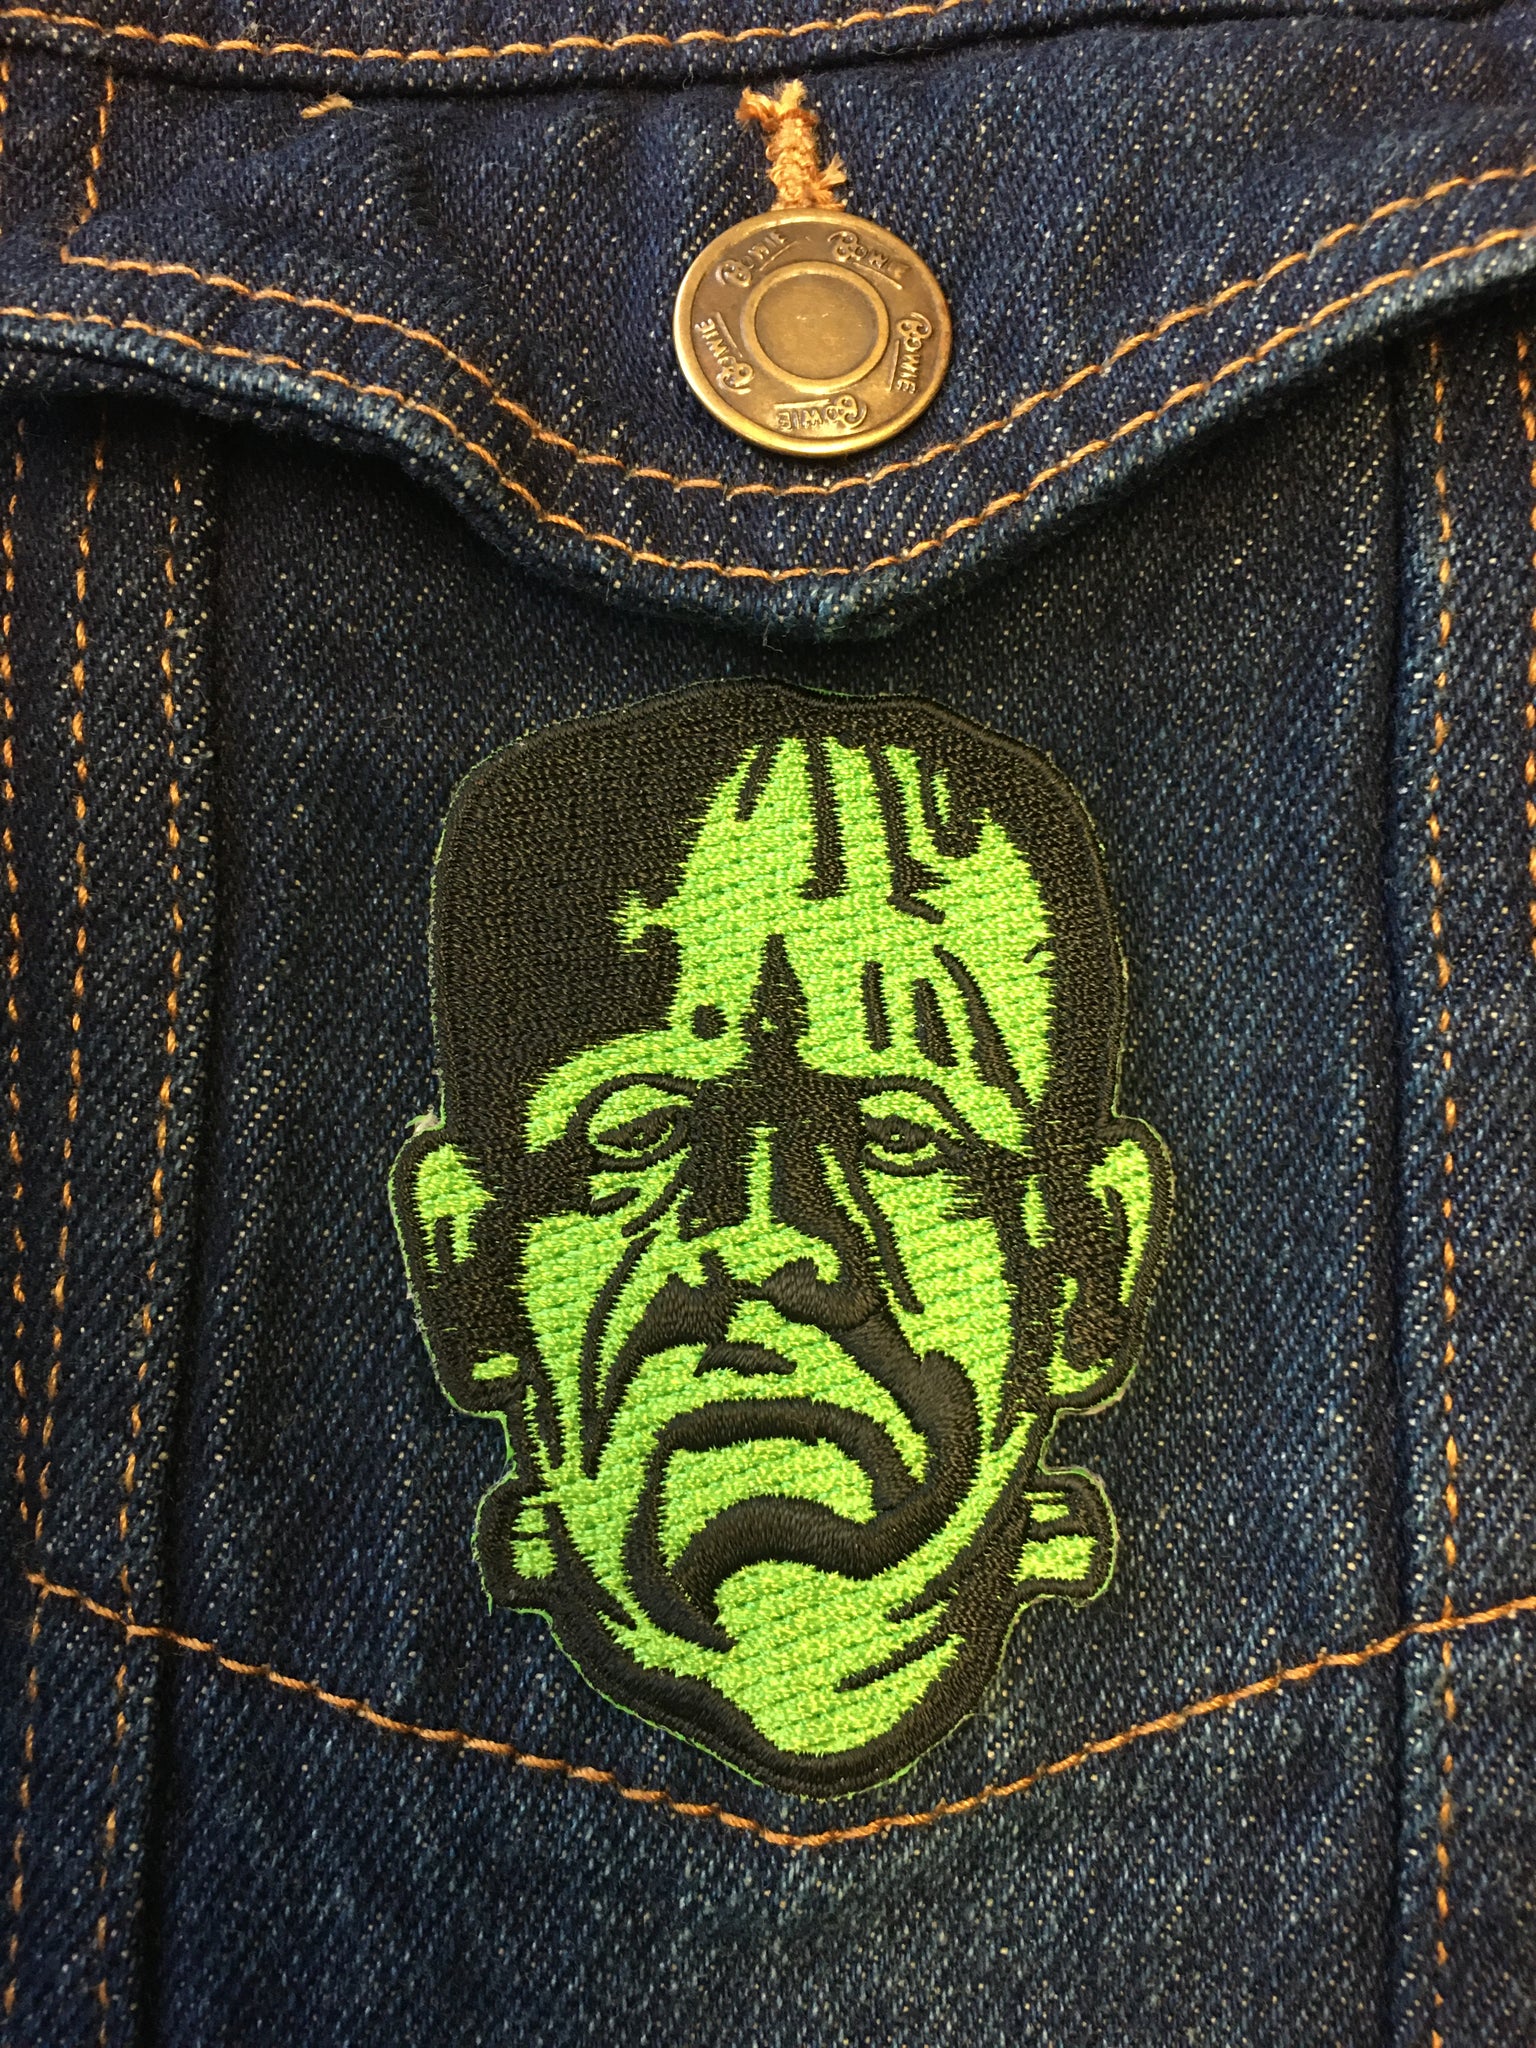 Frankenstein in Green Patch (3" x 2.5")